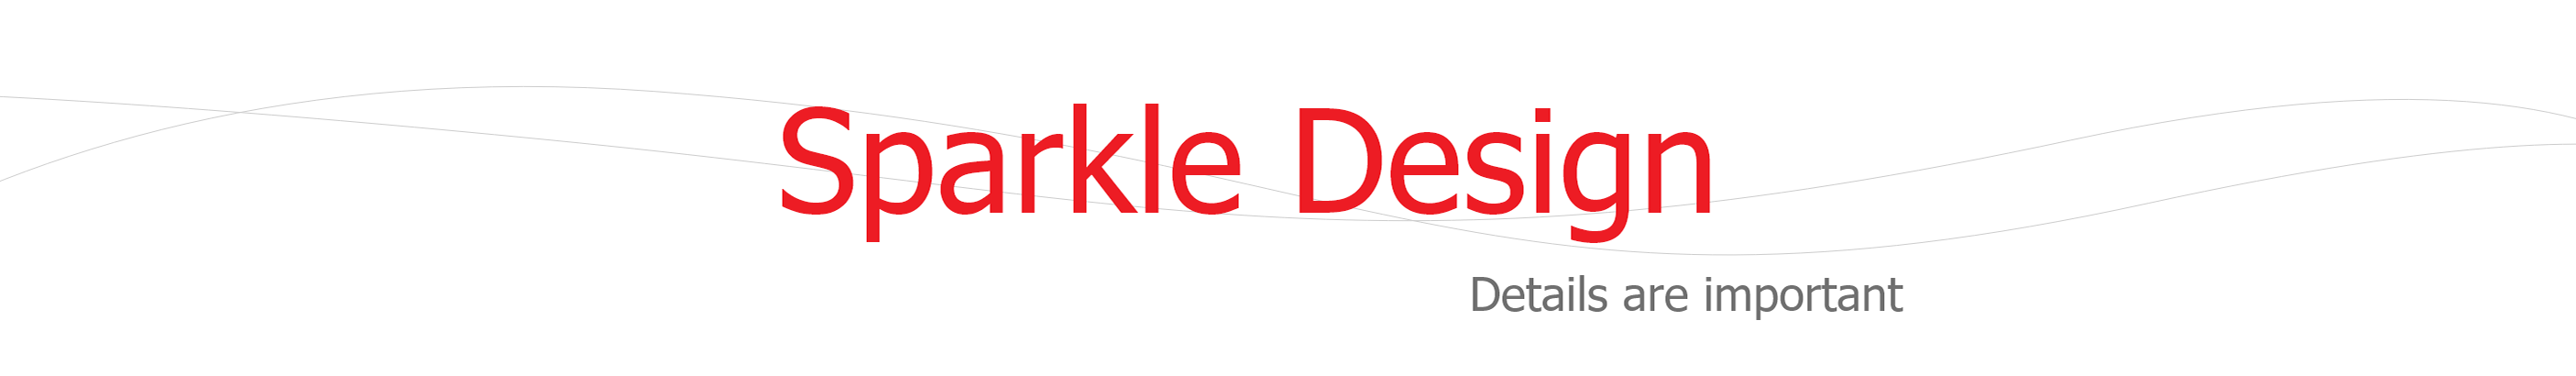 Sparkle Design's profile banner